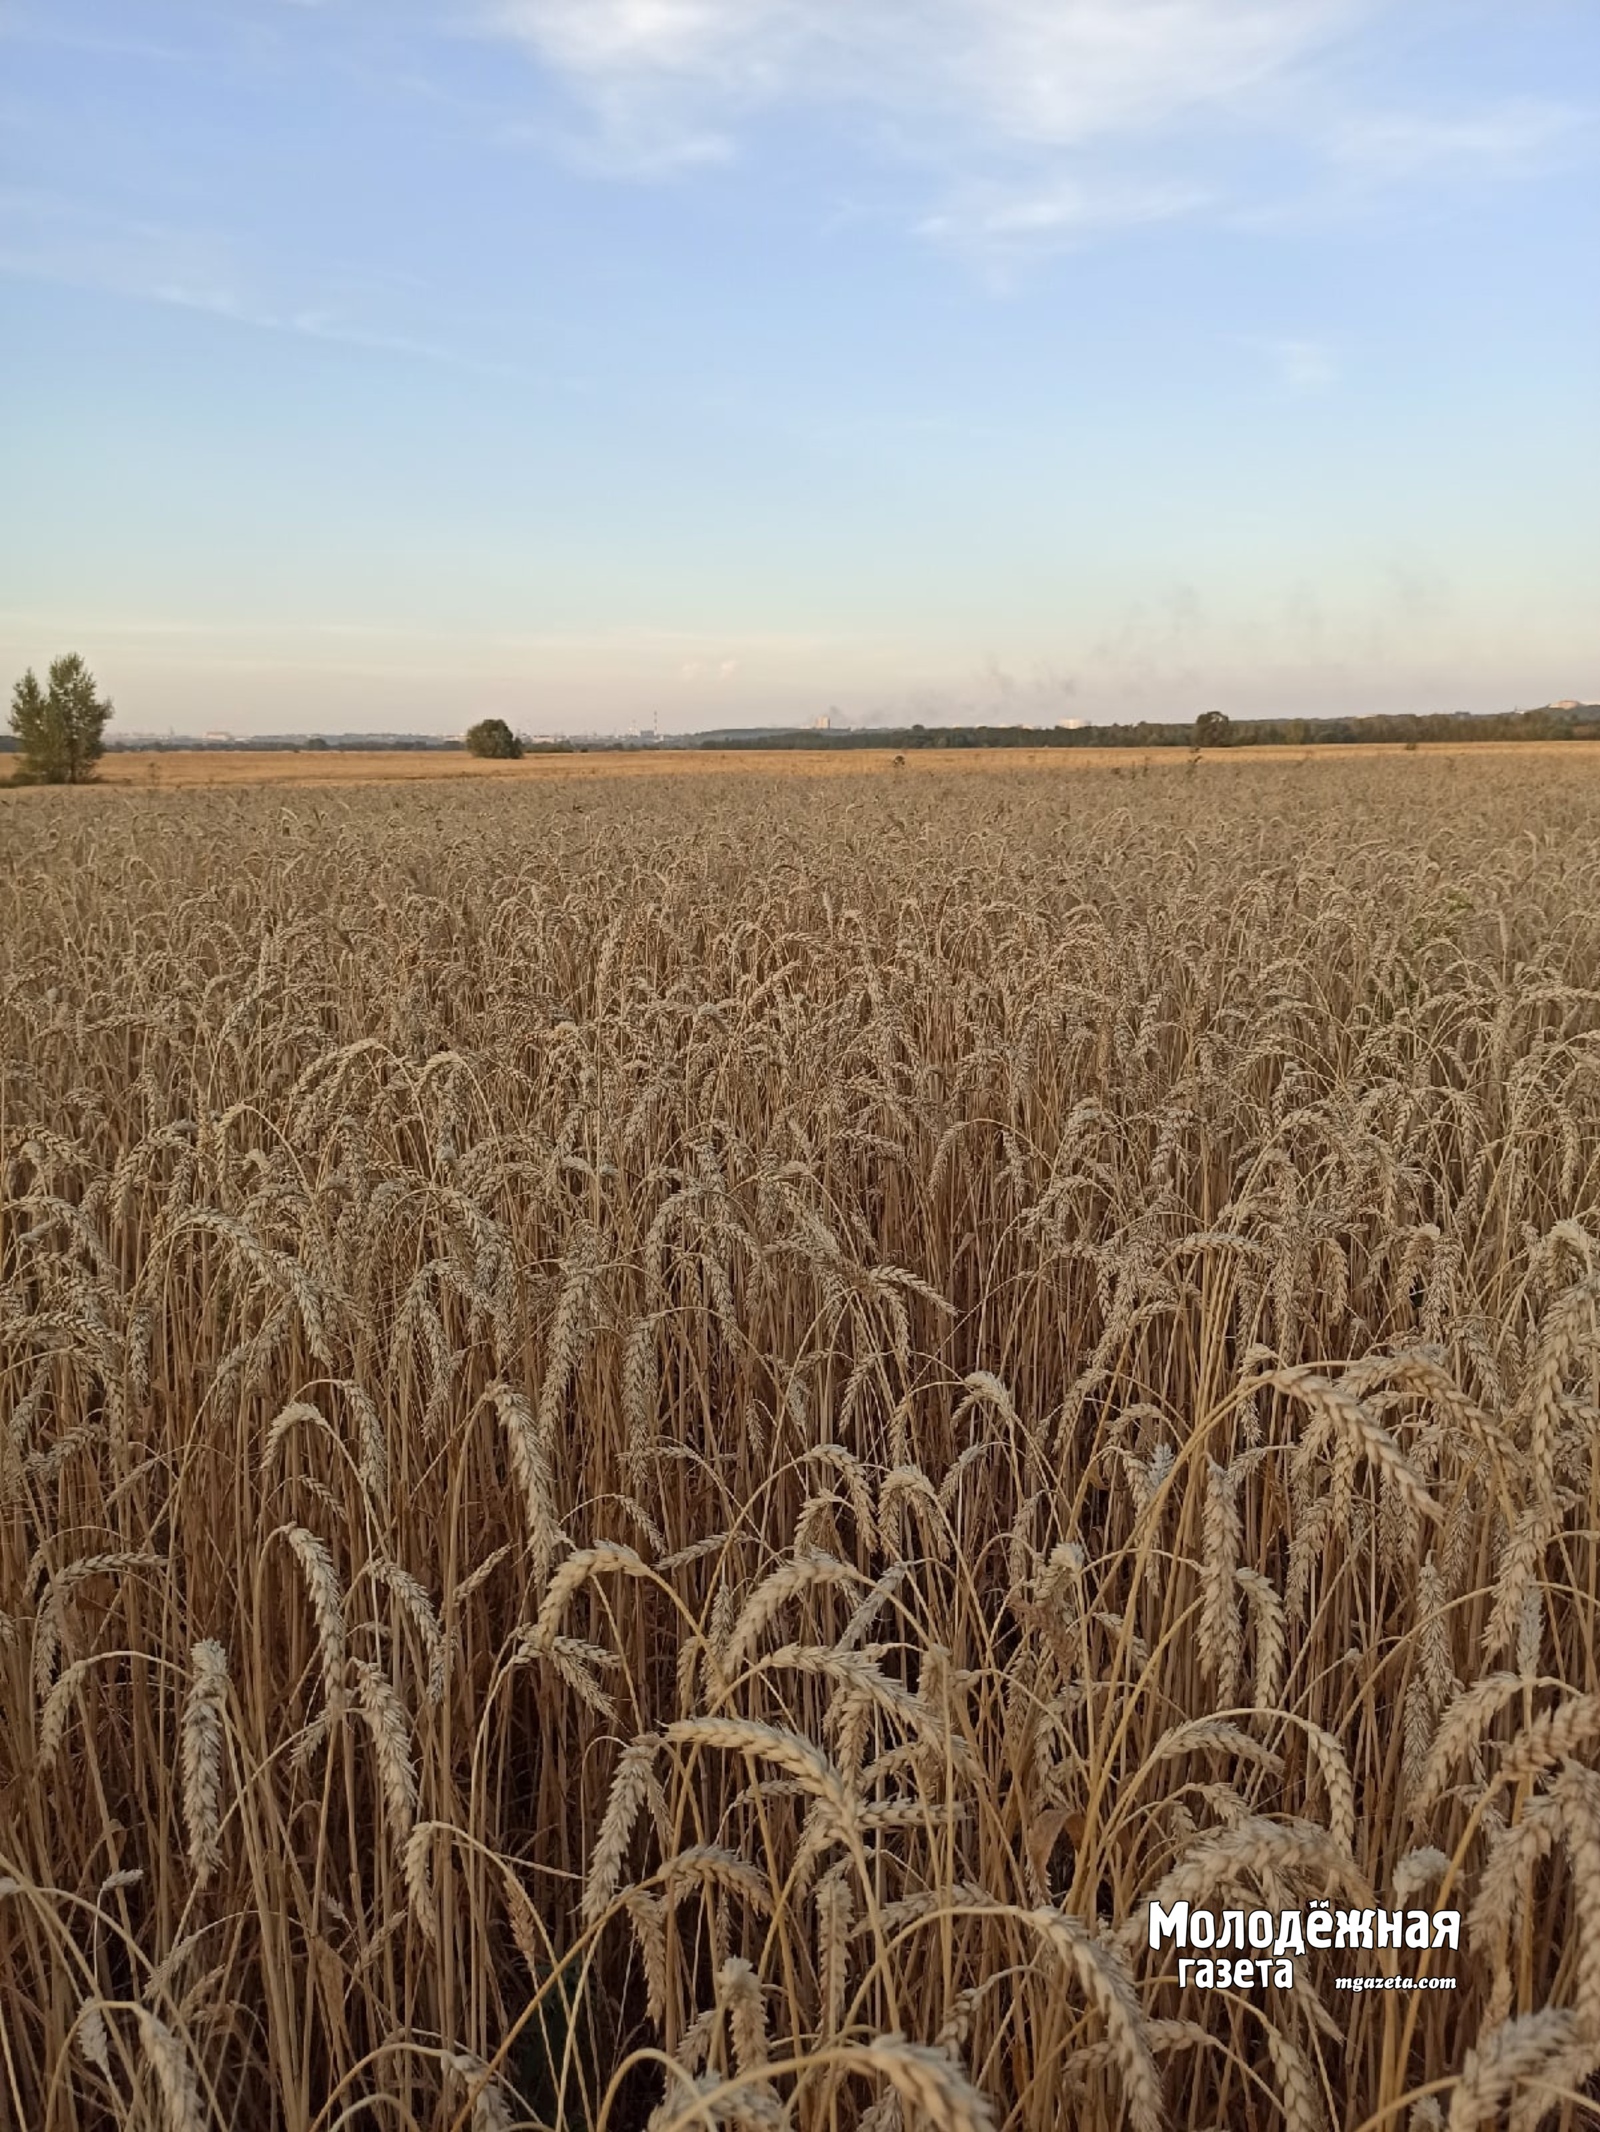 Аграрии собрали 2,25 миллиона тонн зерна в Башкирии